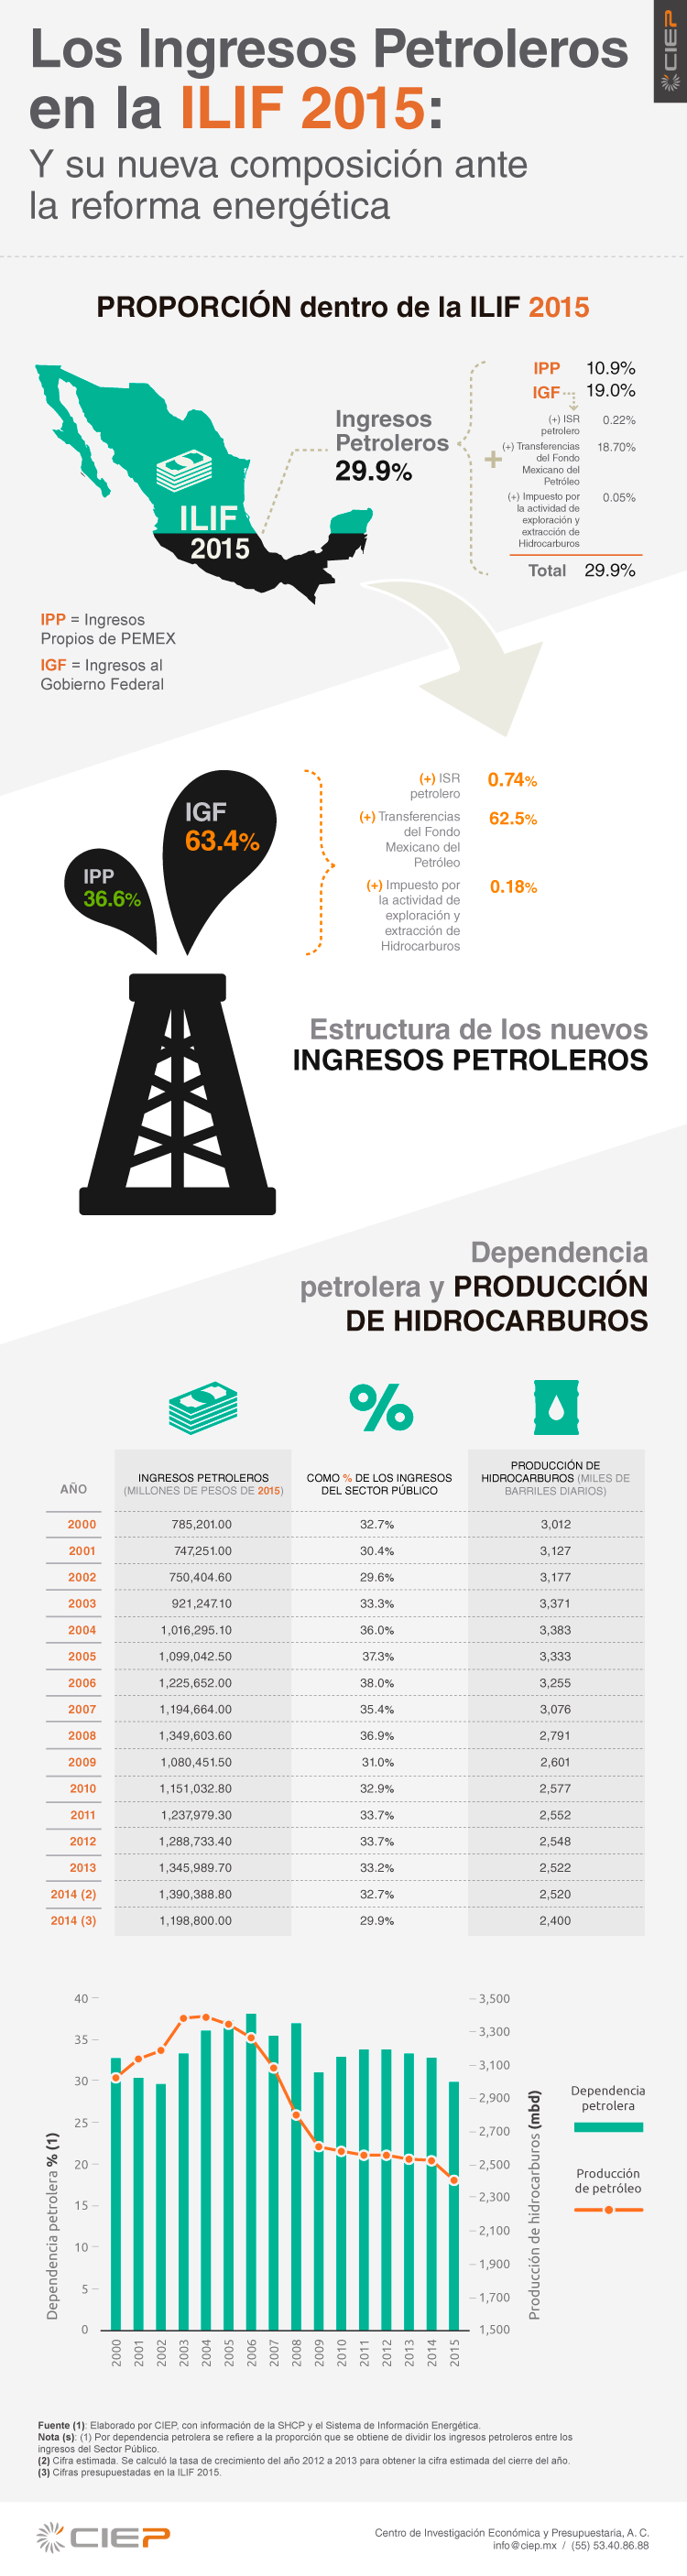 info-petroleros-2015